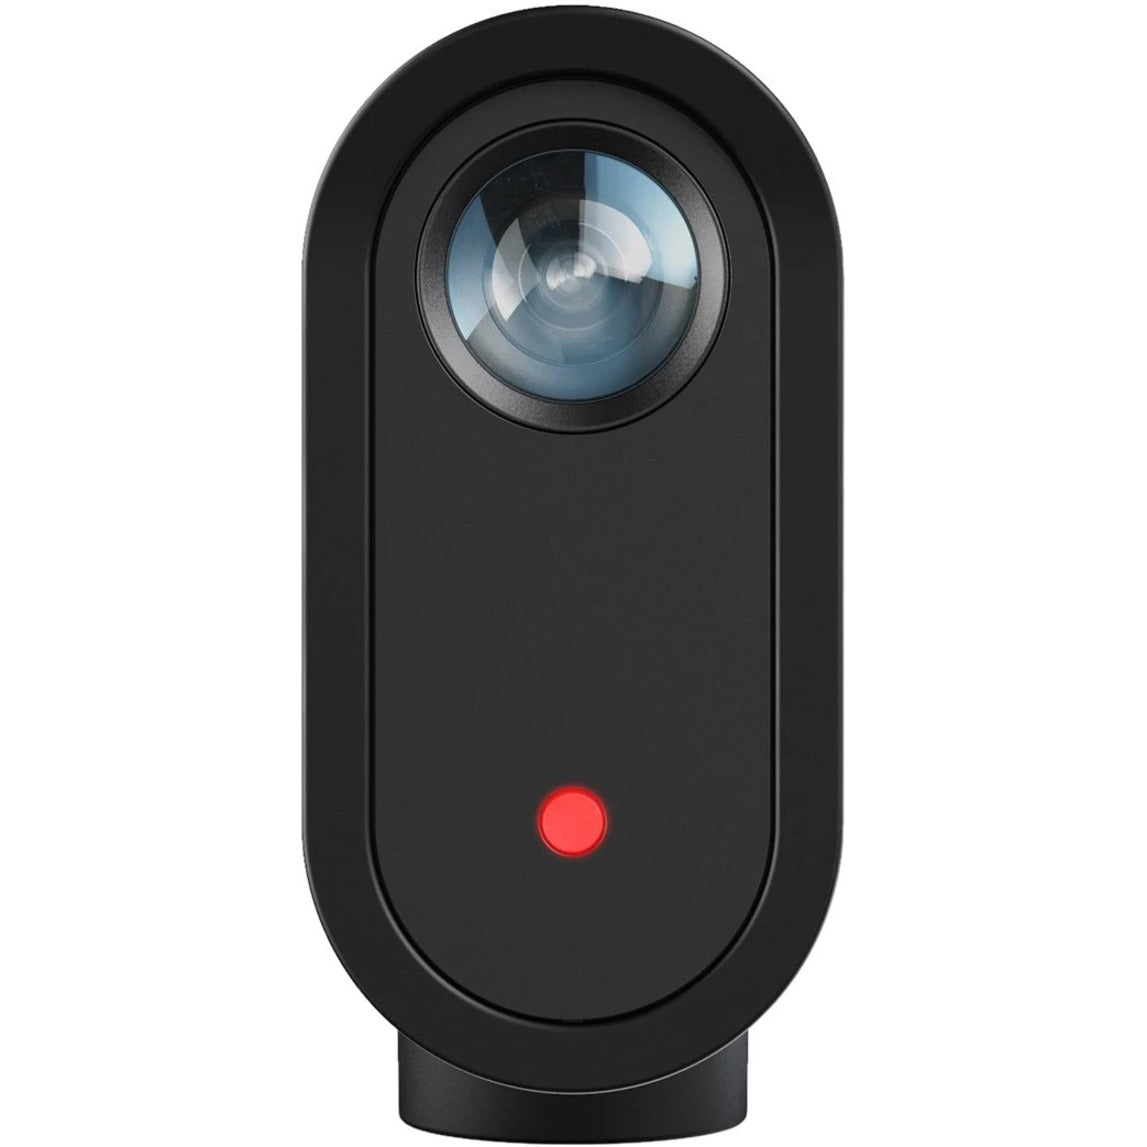 Mevo 961-000498 Start Webcam, USB Type C, 1080p Video, Built-in Microphone, Wireless LAN